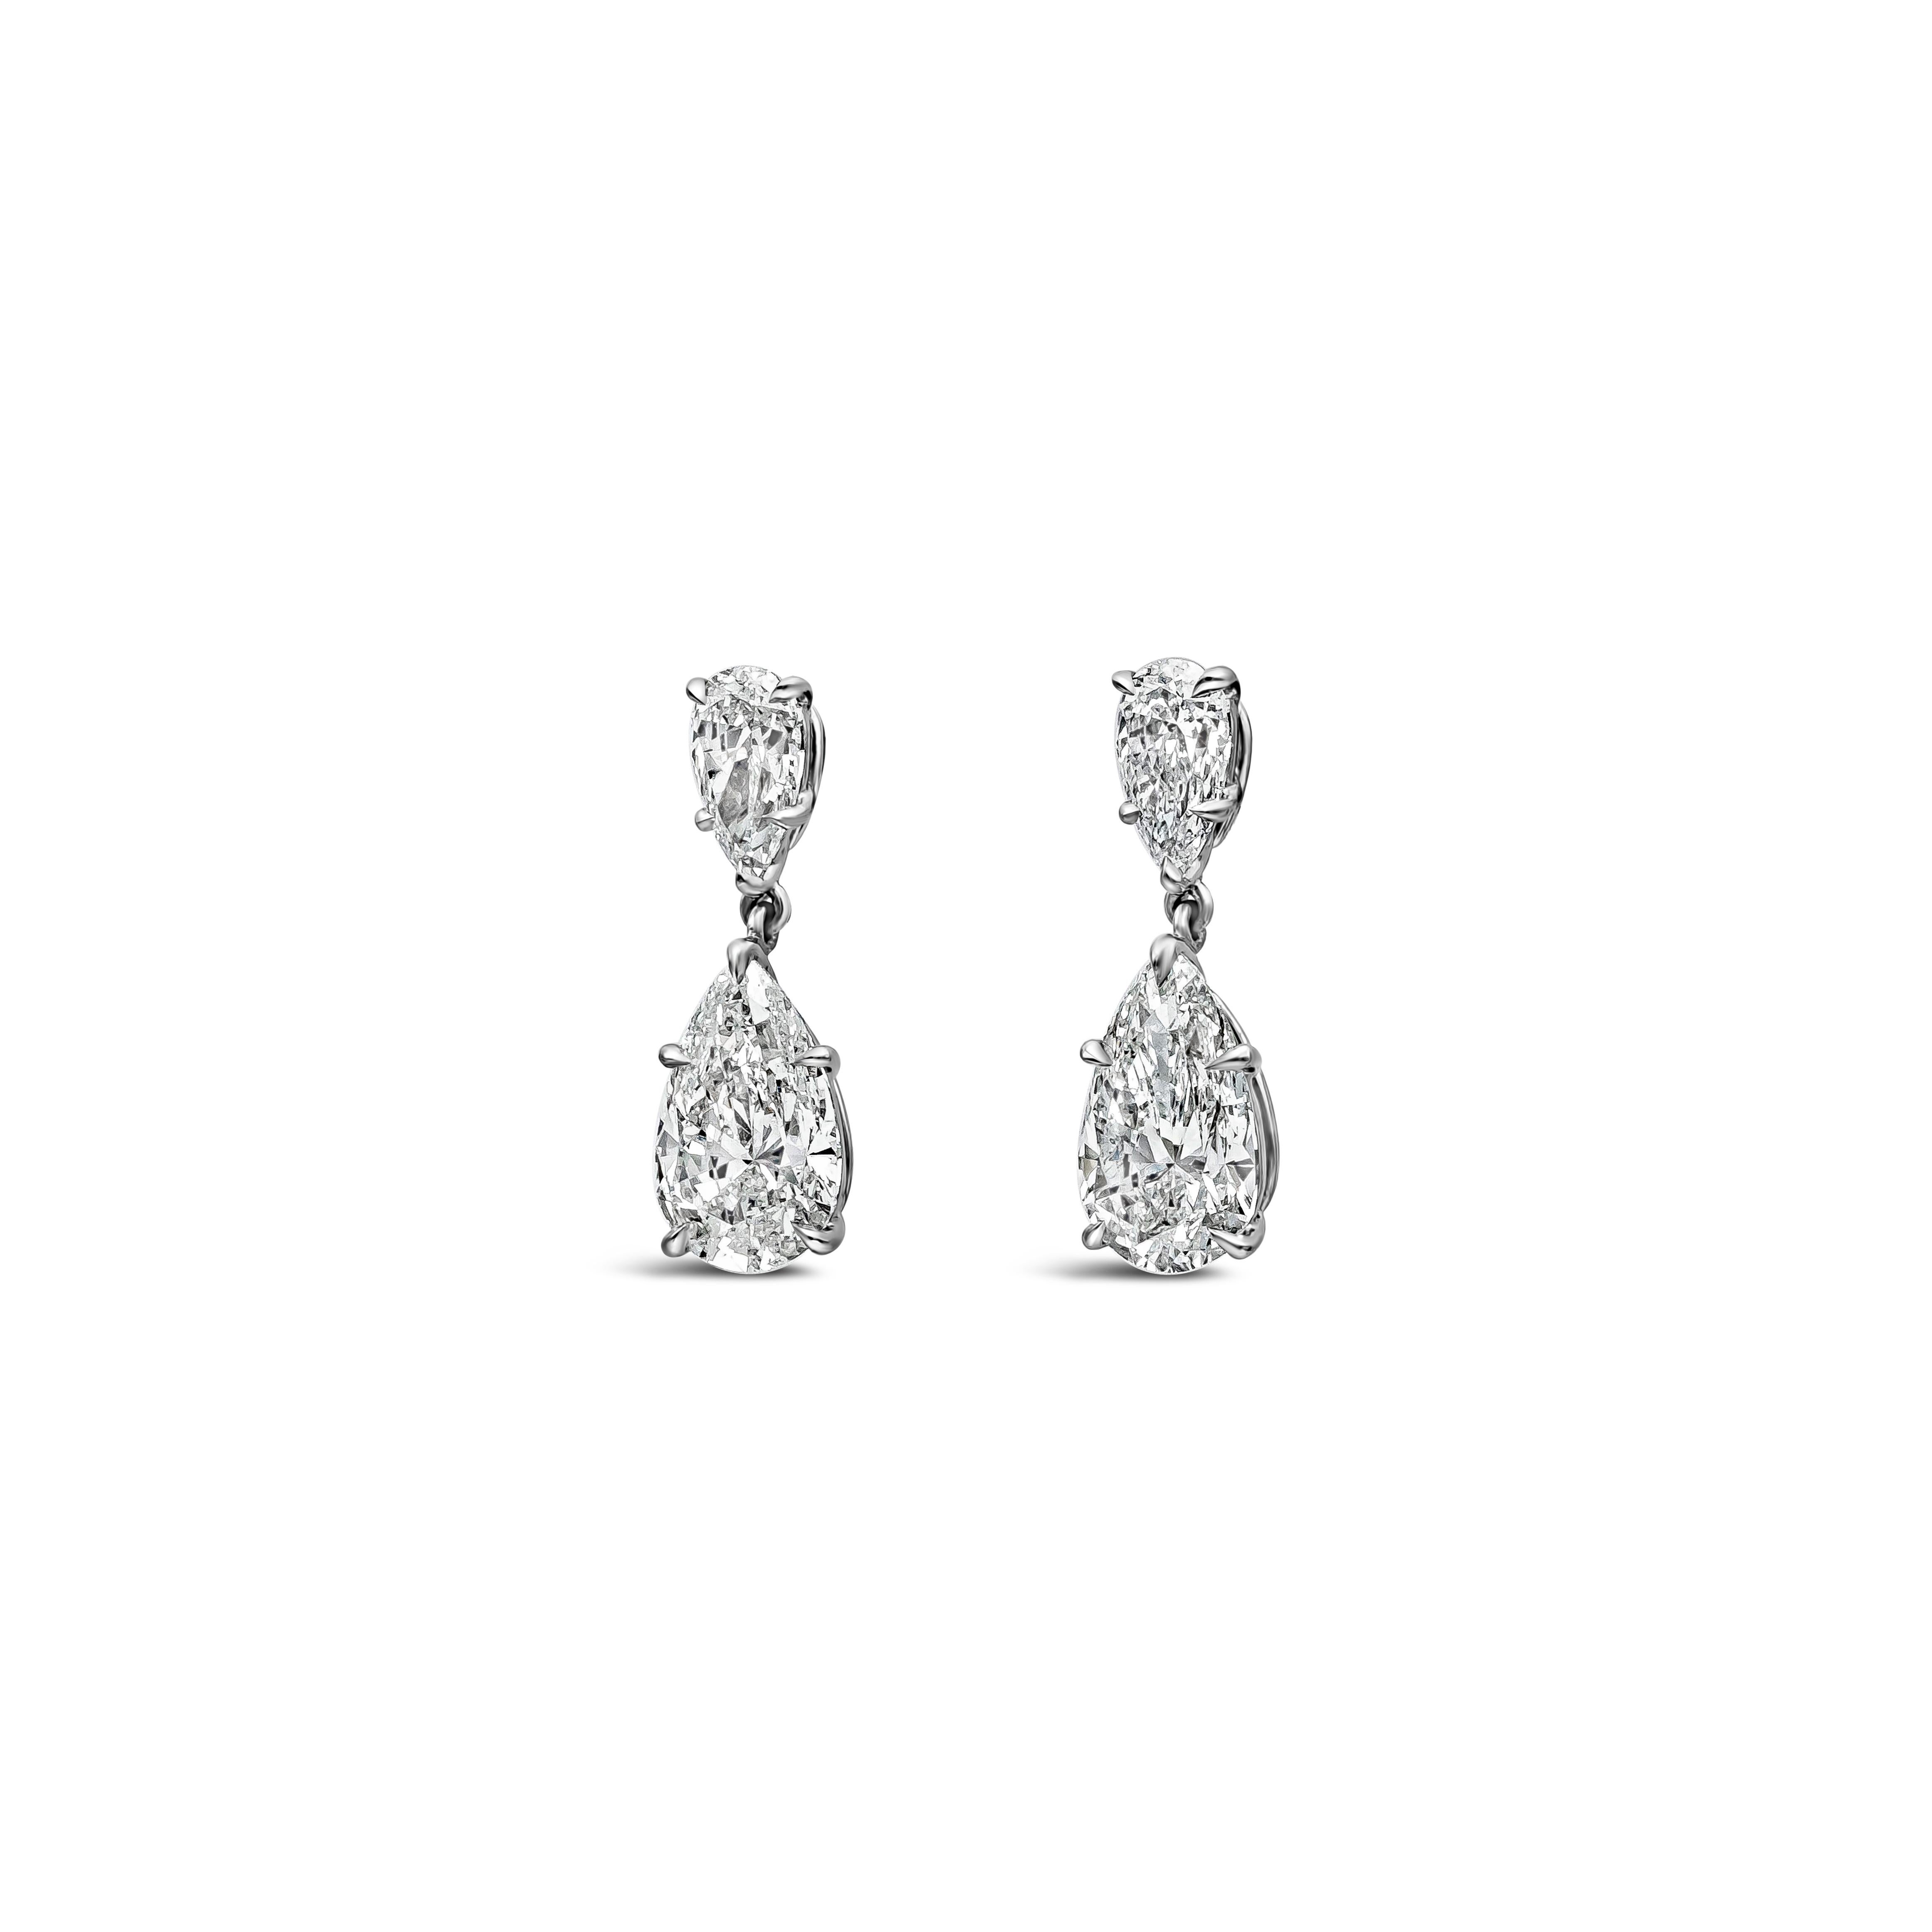 Ein stilvolles Paar Ohrhänger mit zwei GIA-zertifizierten birnenförmigen Diamanten mit einem Gesamtgewicht von 3,20 Karat, F-G Farbe und SI2 in Reinheit. Aufgehängt an einem weiteren birnenförmigen Diamanten von insgesamt 1,01 Karat, Farbe E-F und